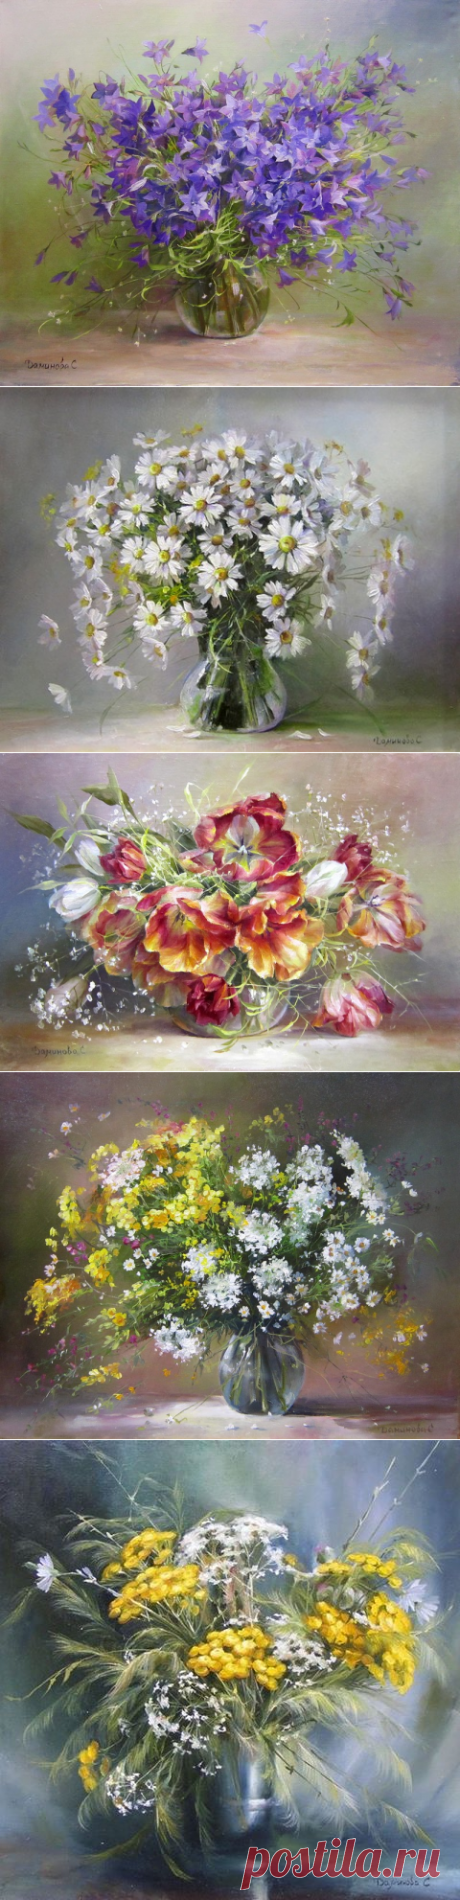 Вальс цветов на картинах Даминовой Стеллы.